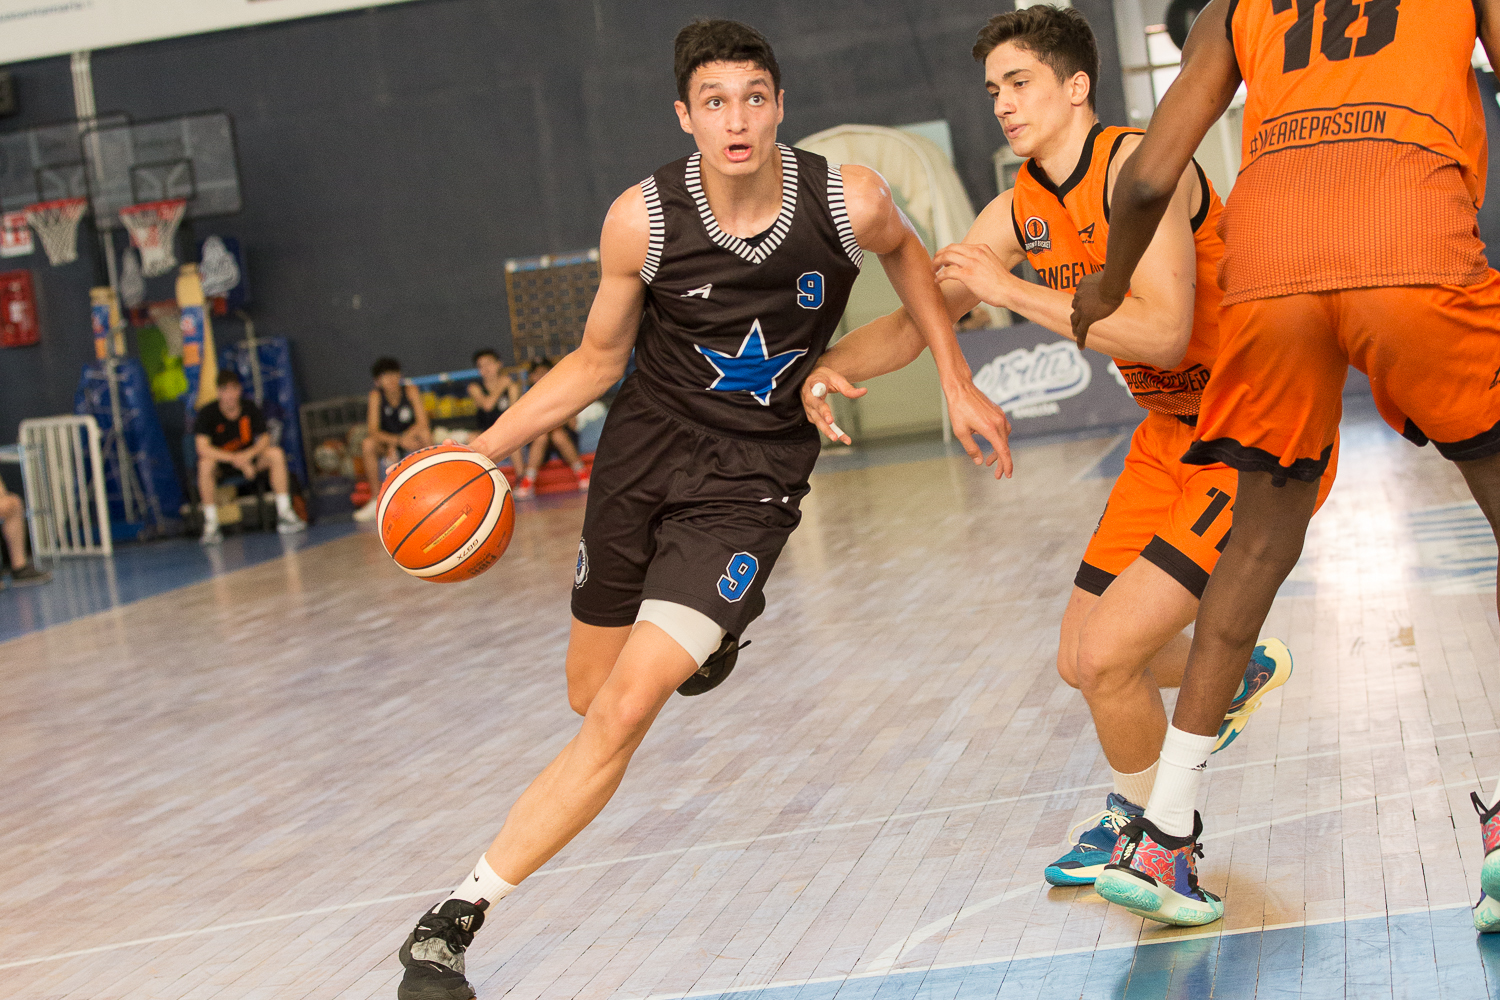 Ragusa, Finali Under 19 di basket maschile al Pala Padua: vanno in finale Stella Azzurra e Borgomanero